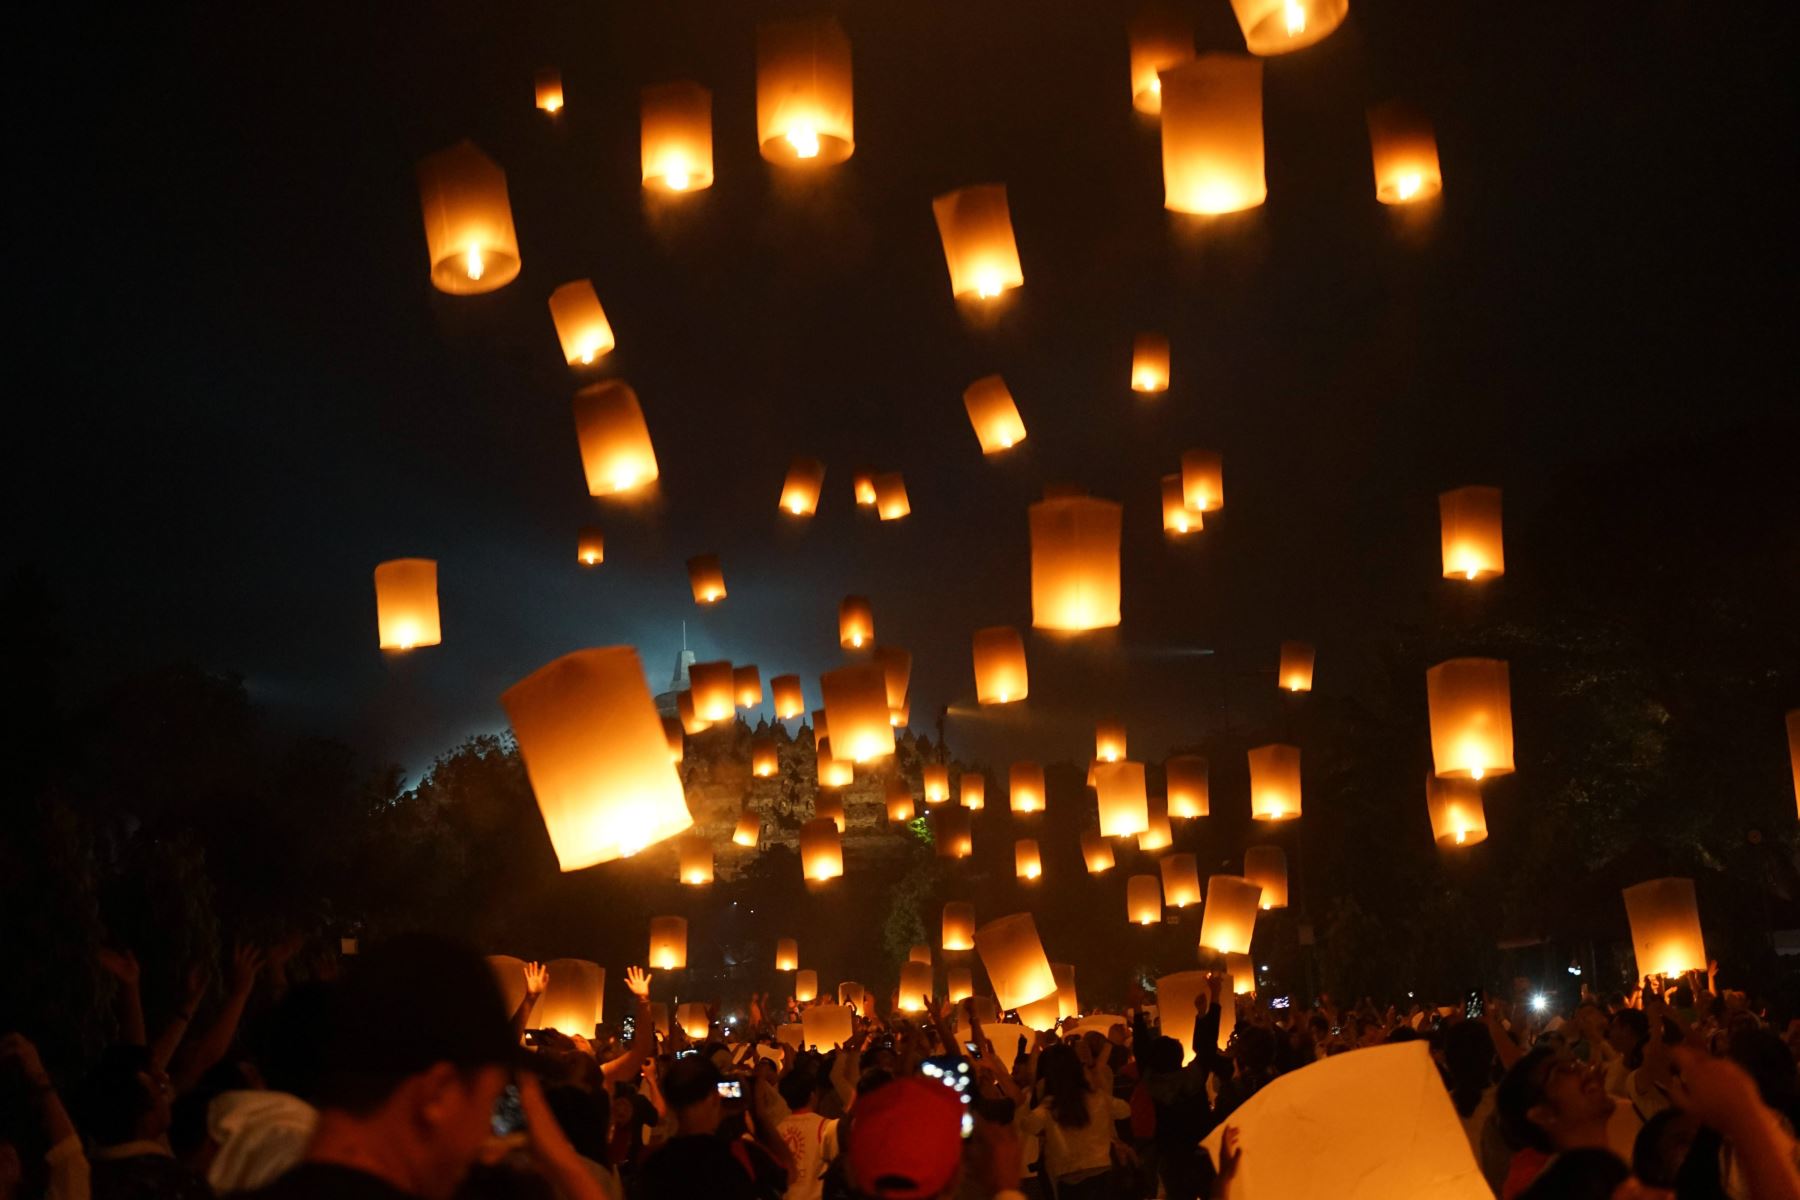 Los devotos budistas lanzan linternas en el aire como un símbolo de paz para honrar el cumpleaños de Buda, también conocido como celebraciones Vesak, en el templo de Borobudur en Magelang, Java Central, a principios del 19 de mayo de 2019. Los budistas celebran Vesak, que conmemora el nacimiento de Buda. 
Foto:AFP